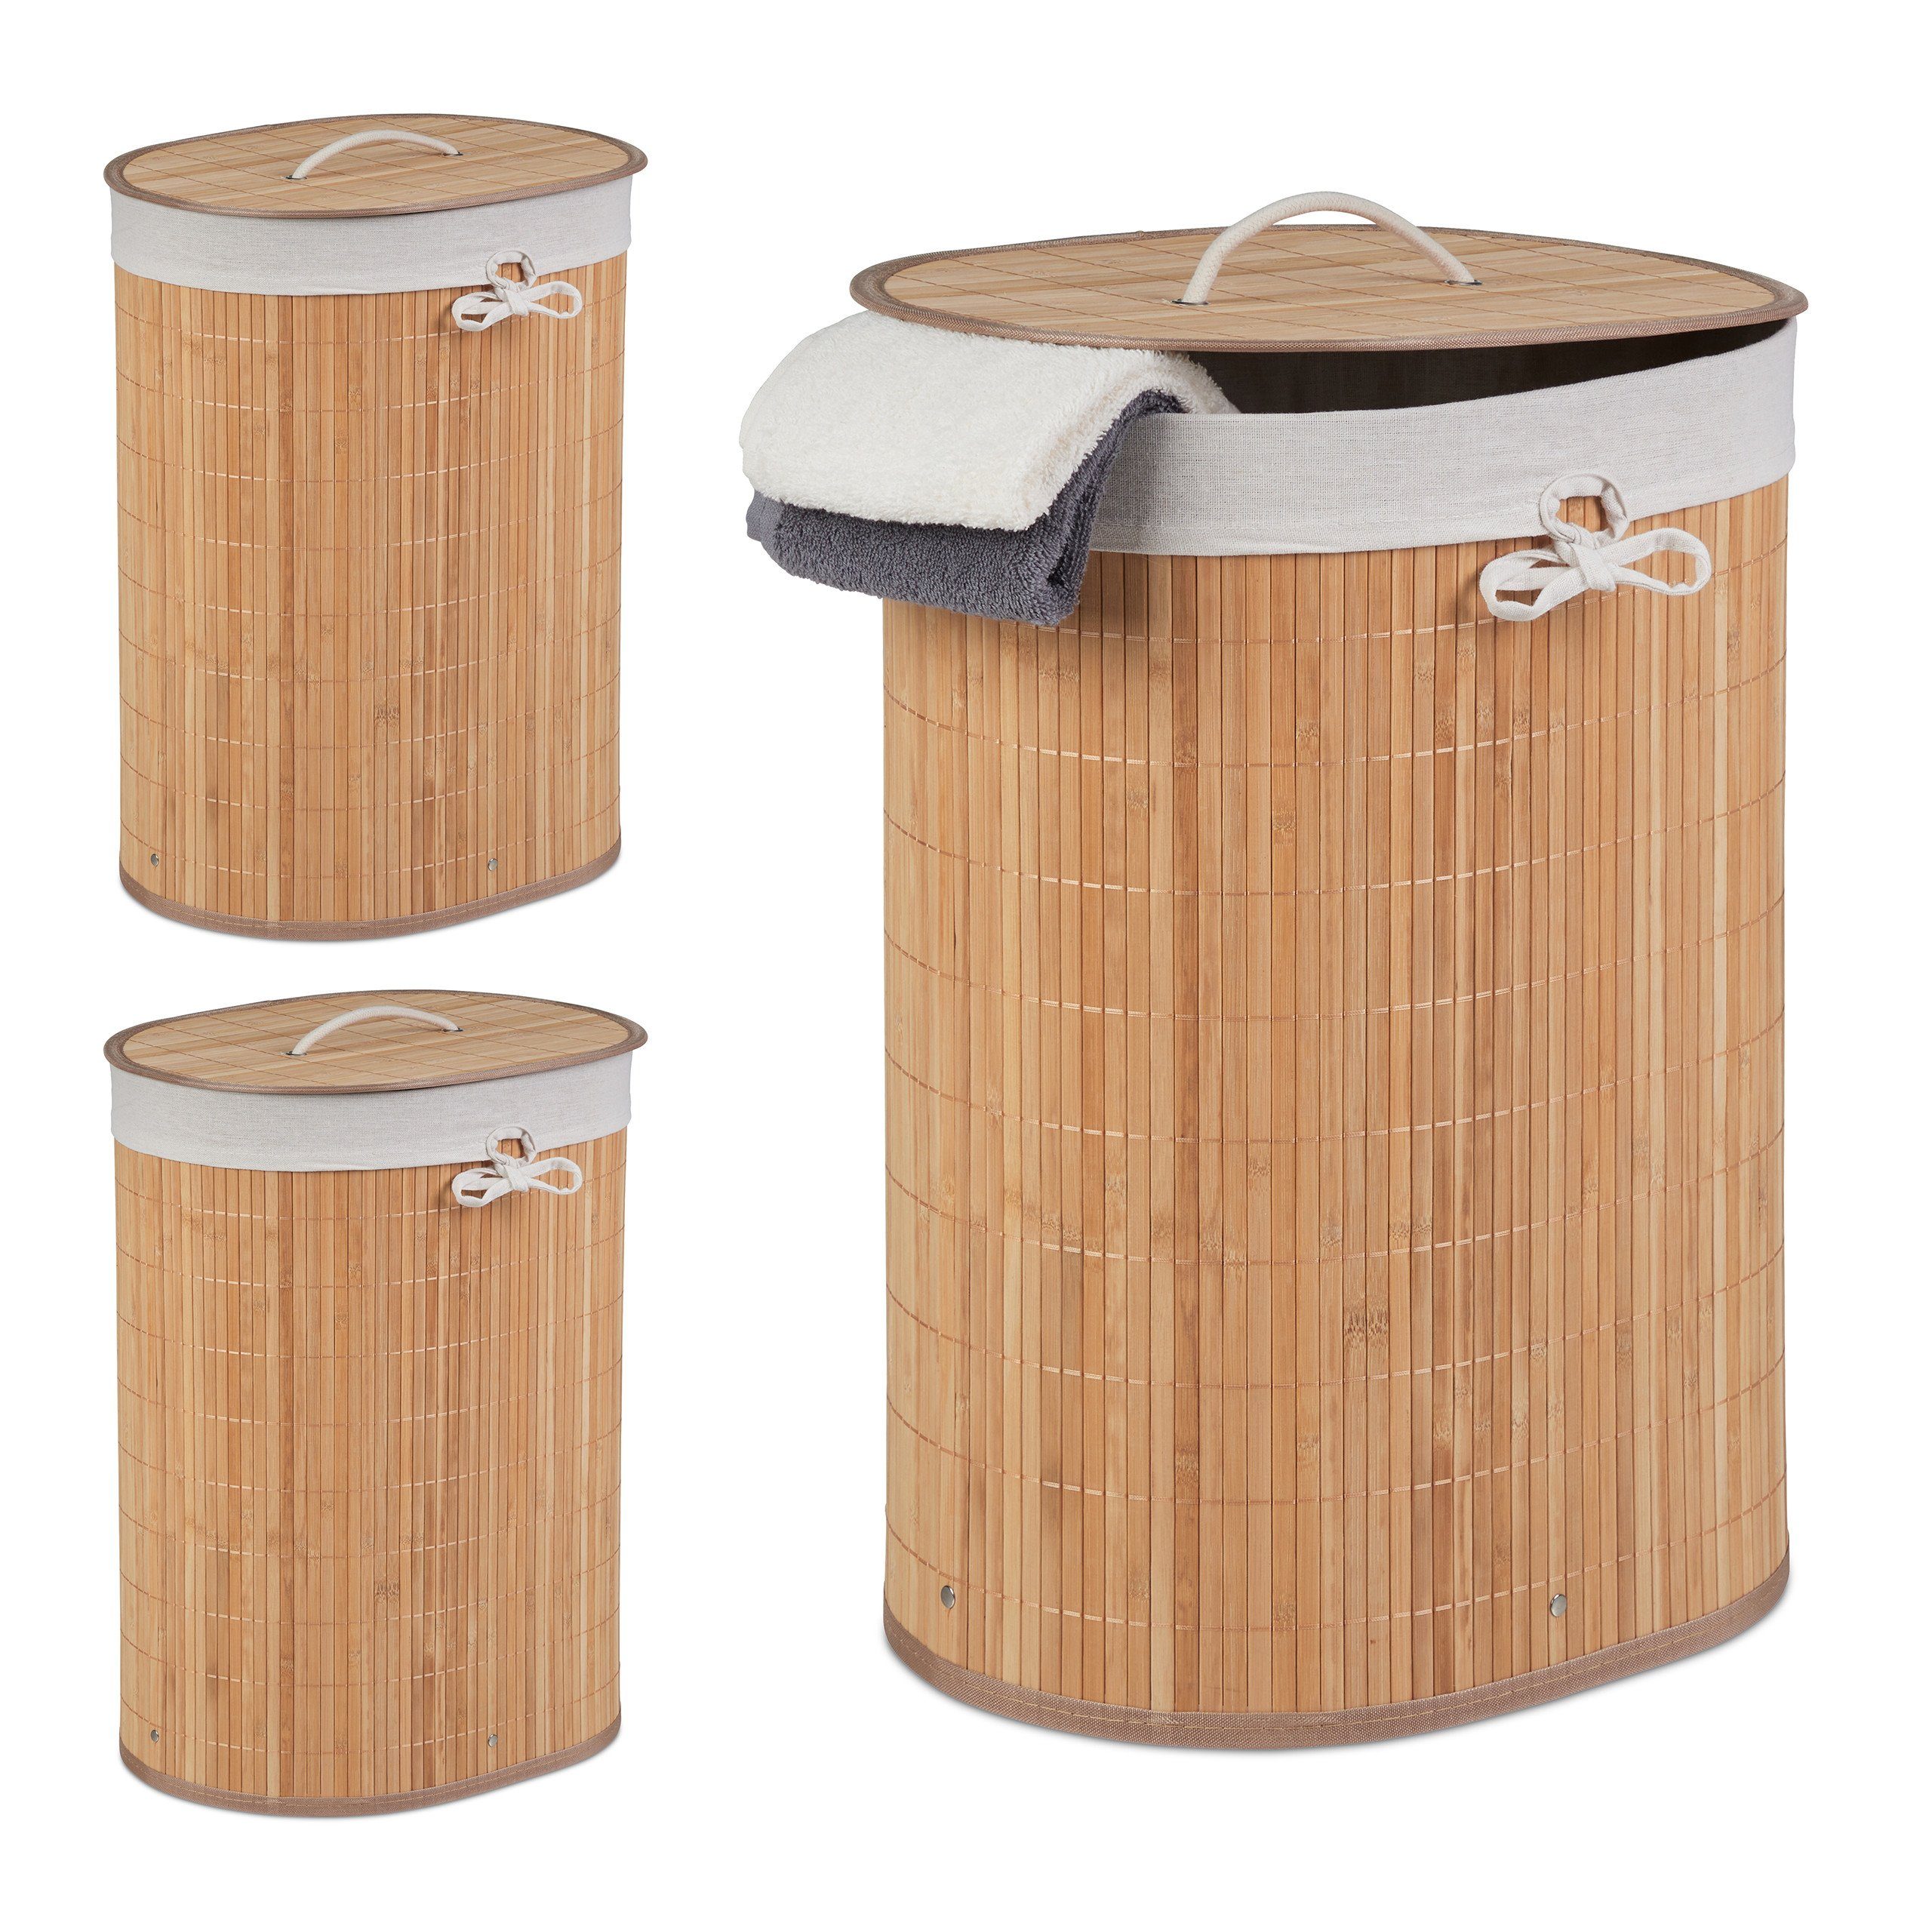 relaxdays Wäschekorb »3 x Bambus Wäschekorb oval natur« online kaufen | OTTO